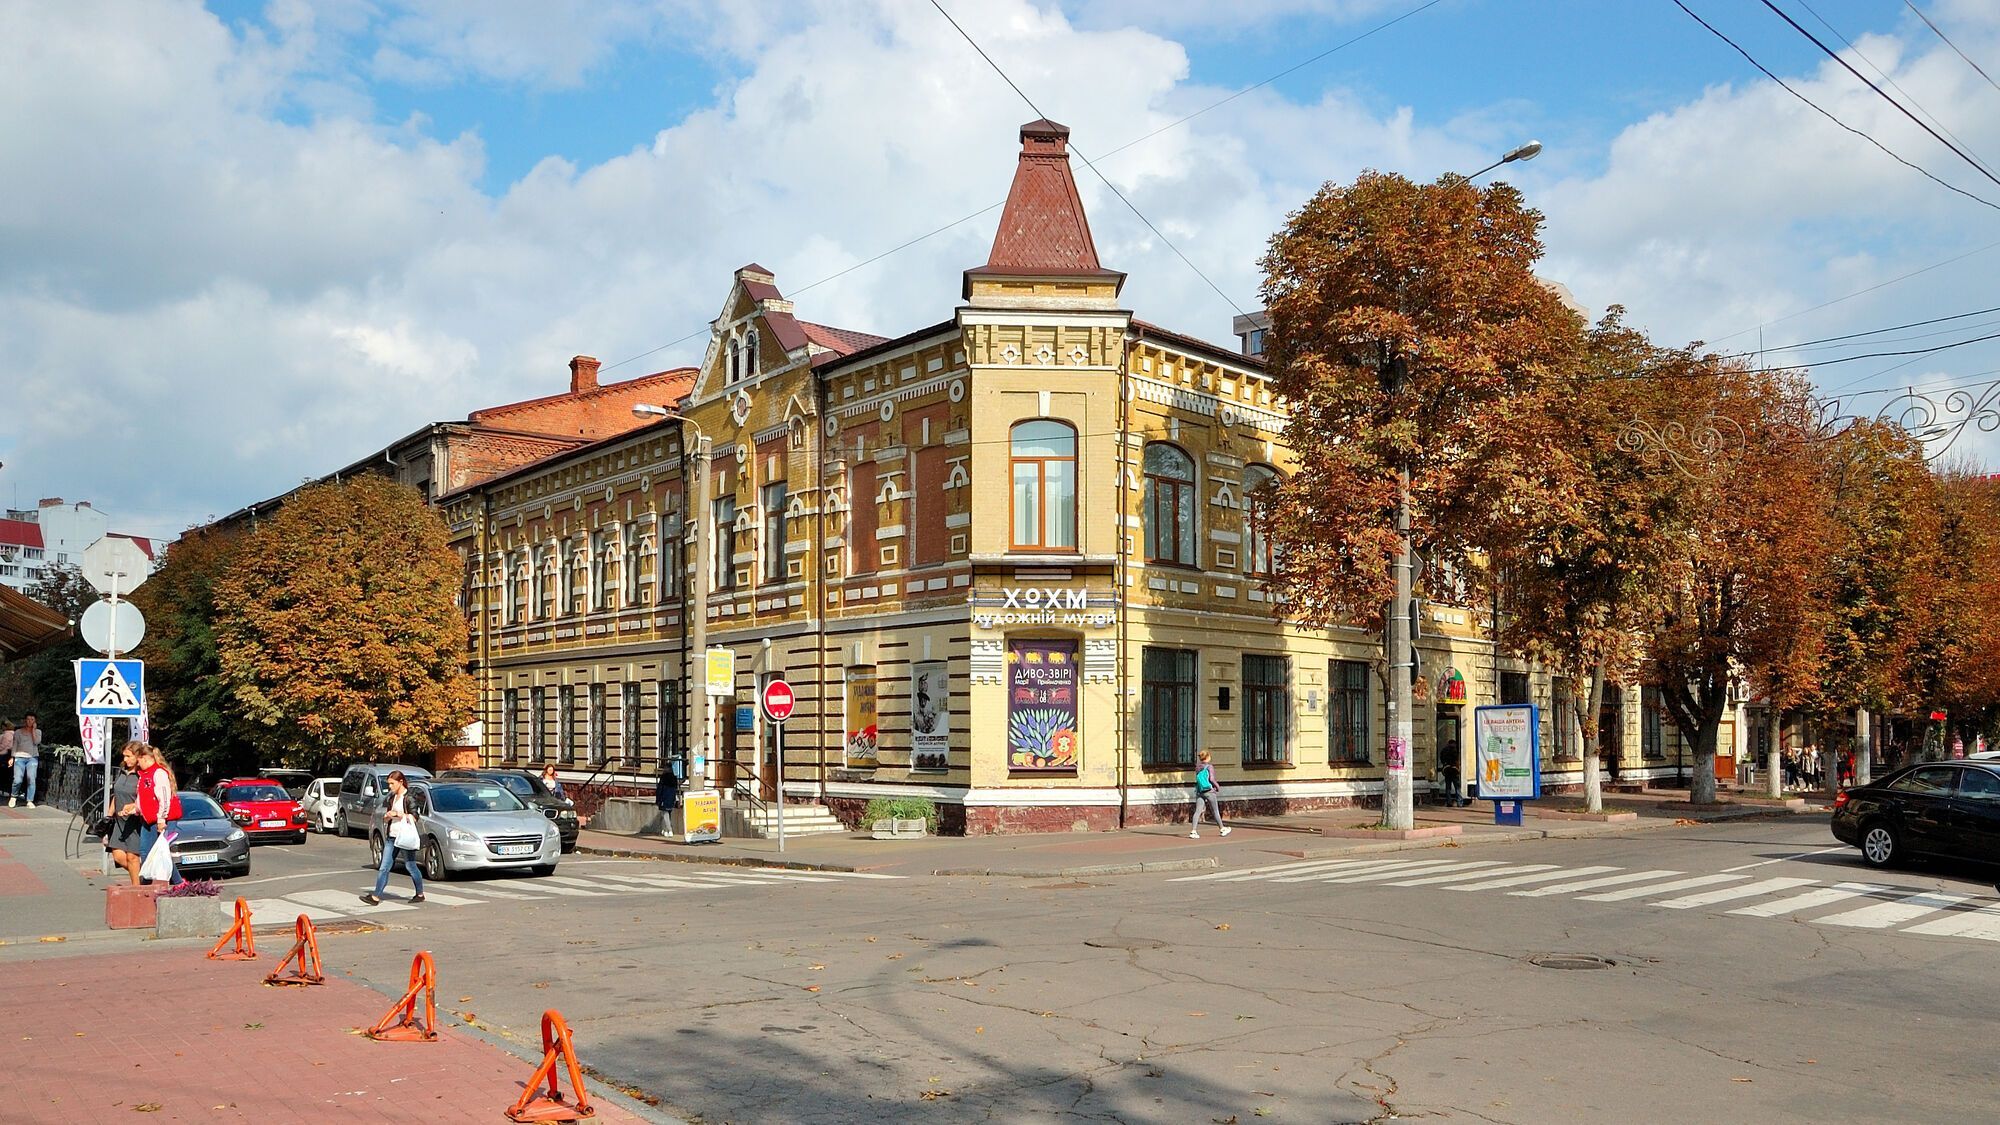 Яке українське місто зображене на фото: перевірте свої знання